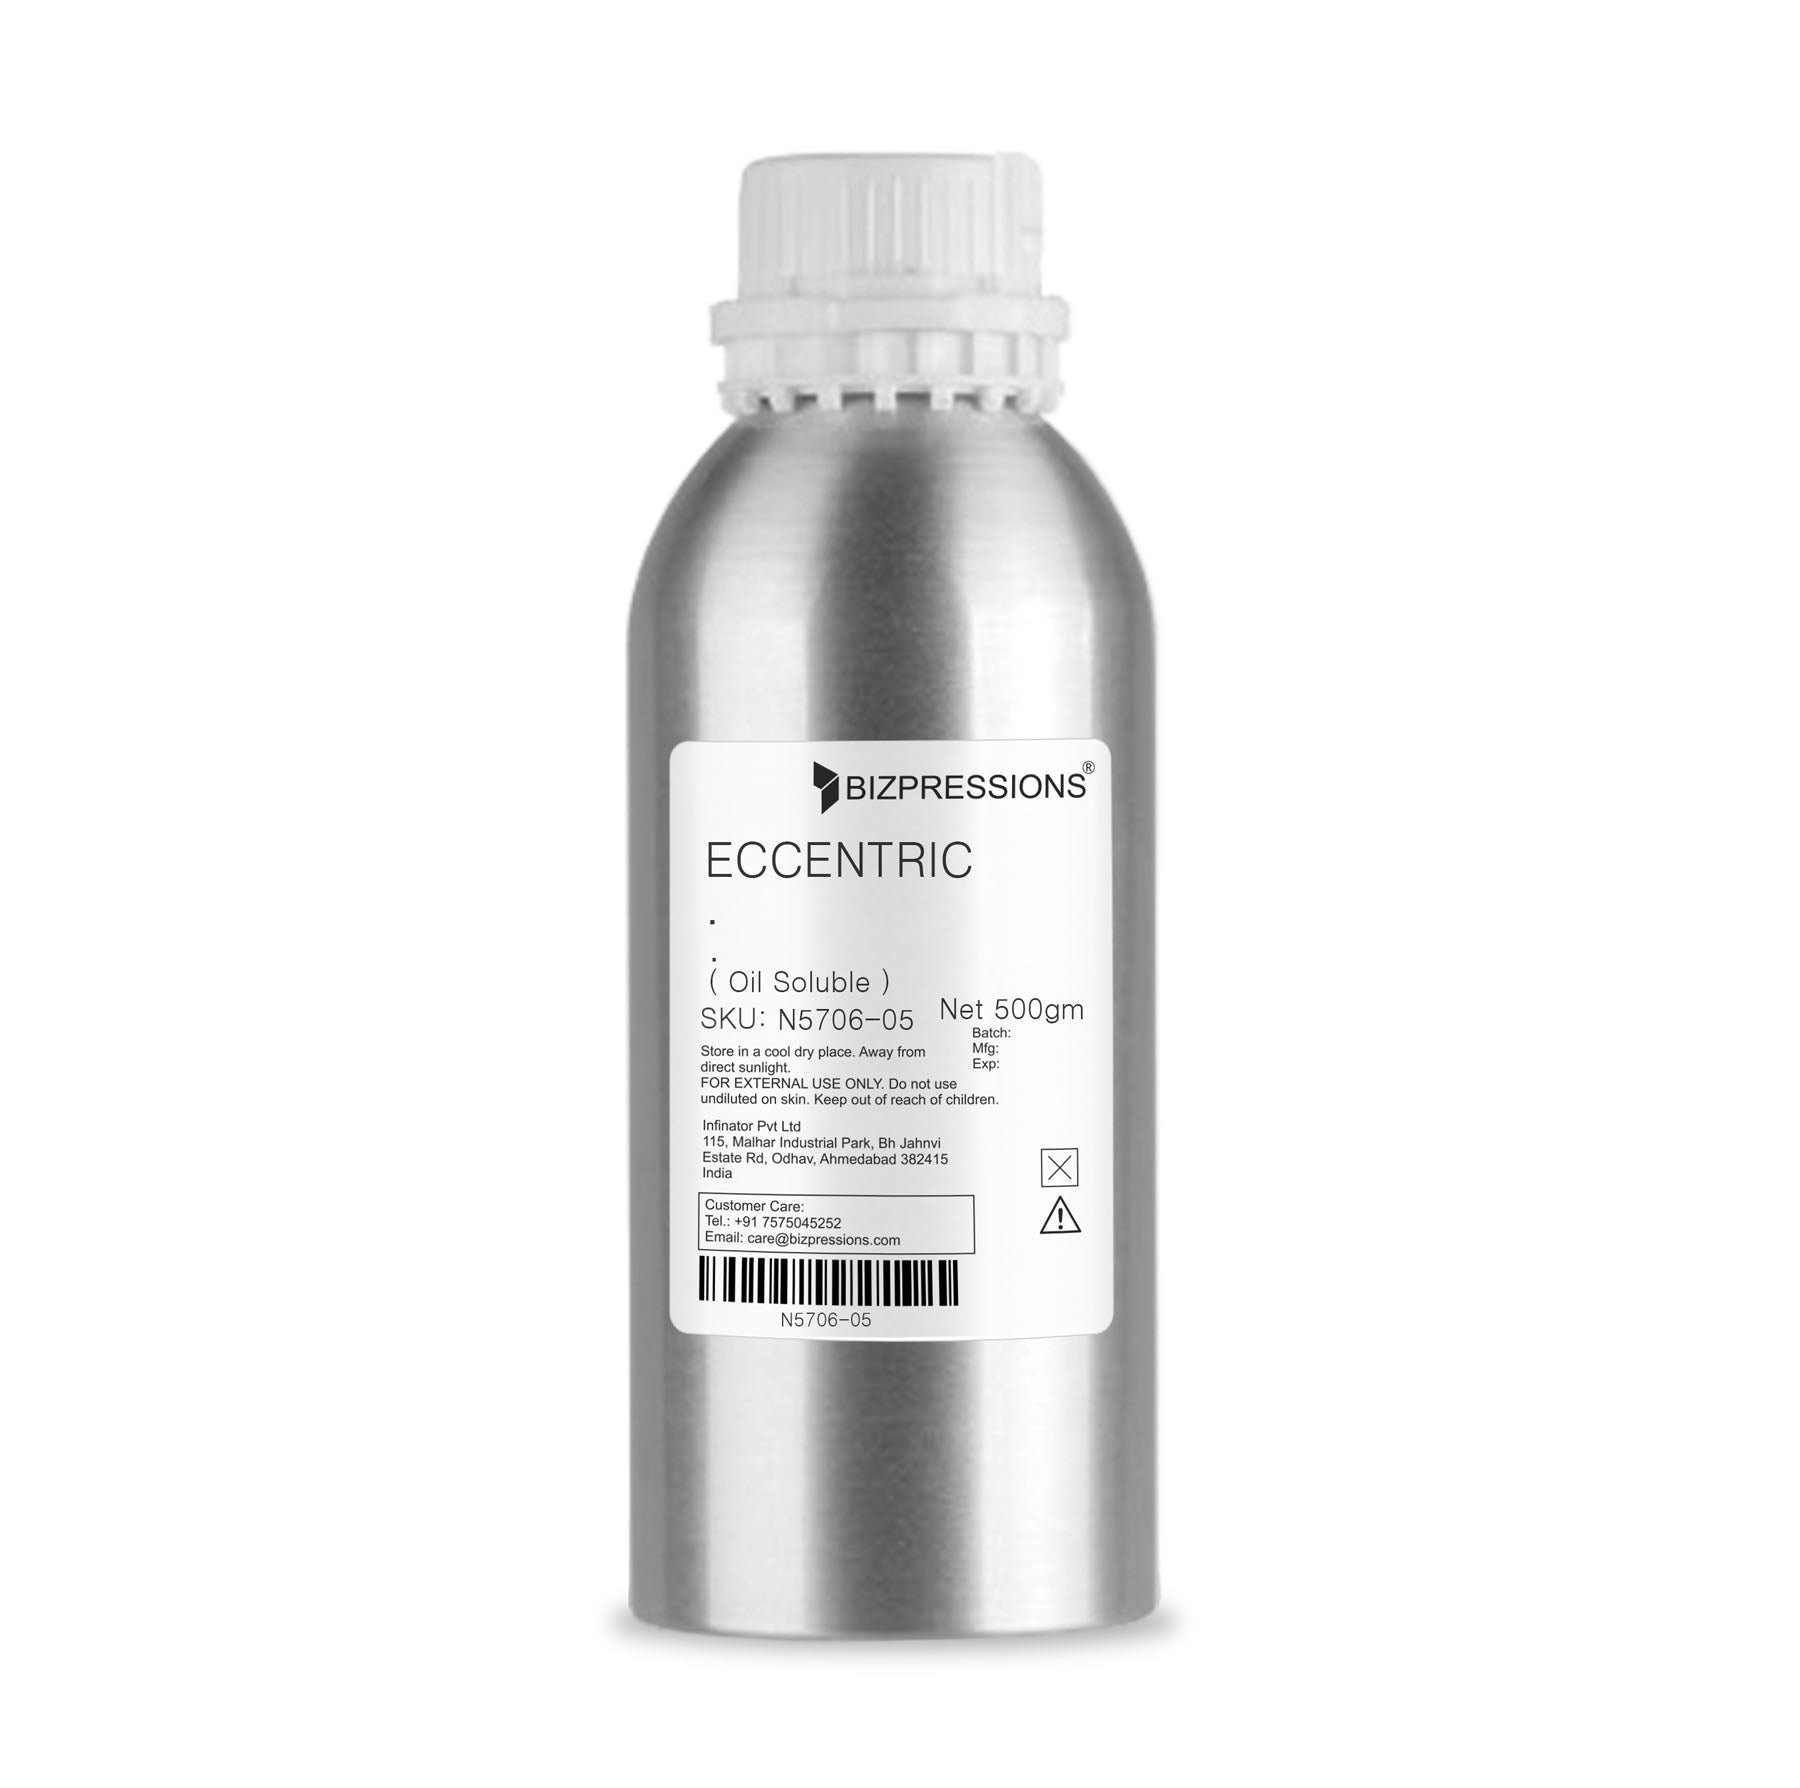 ECCENTRIC - Fragrance ( Oil Soluble ) - 500 gm